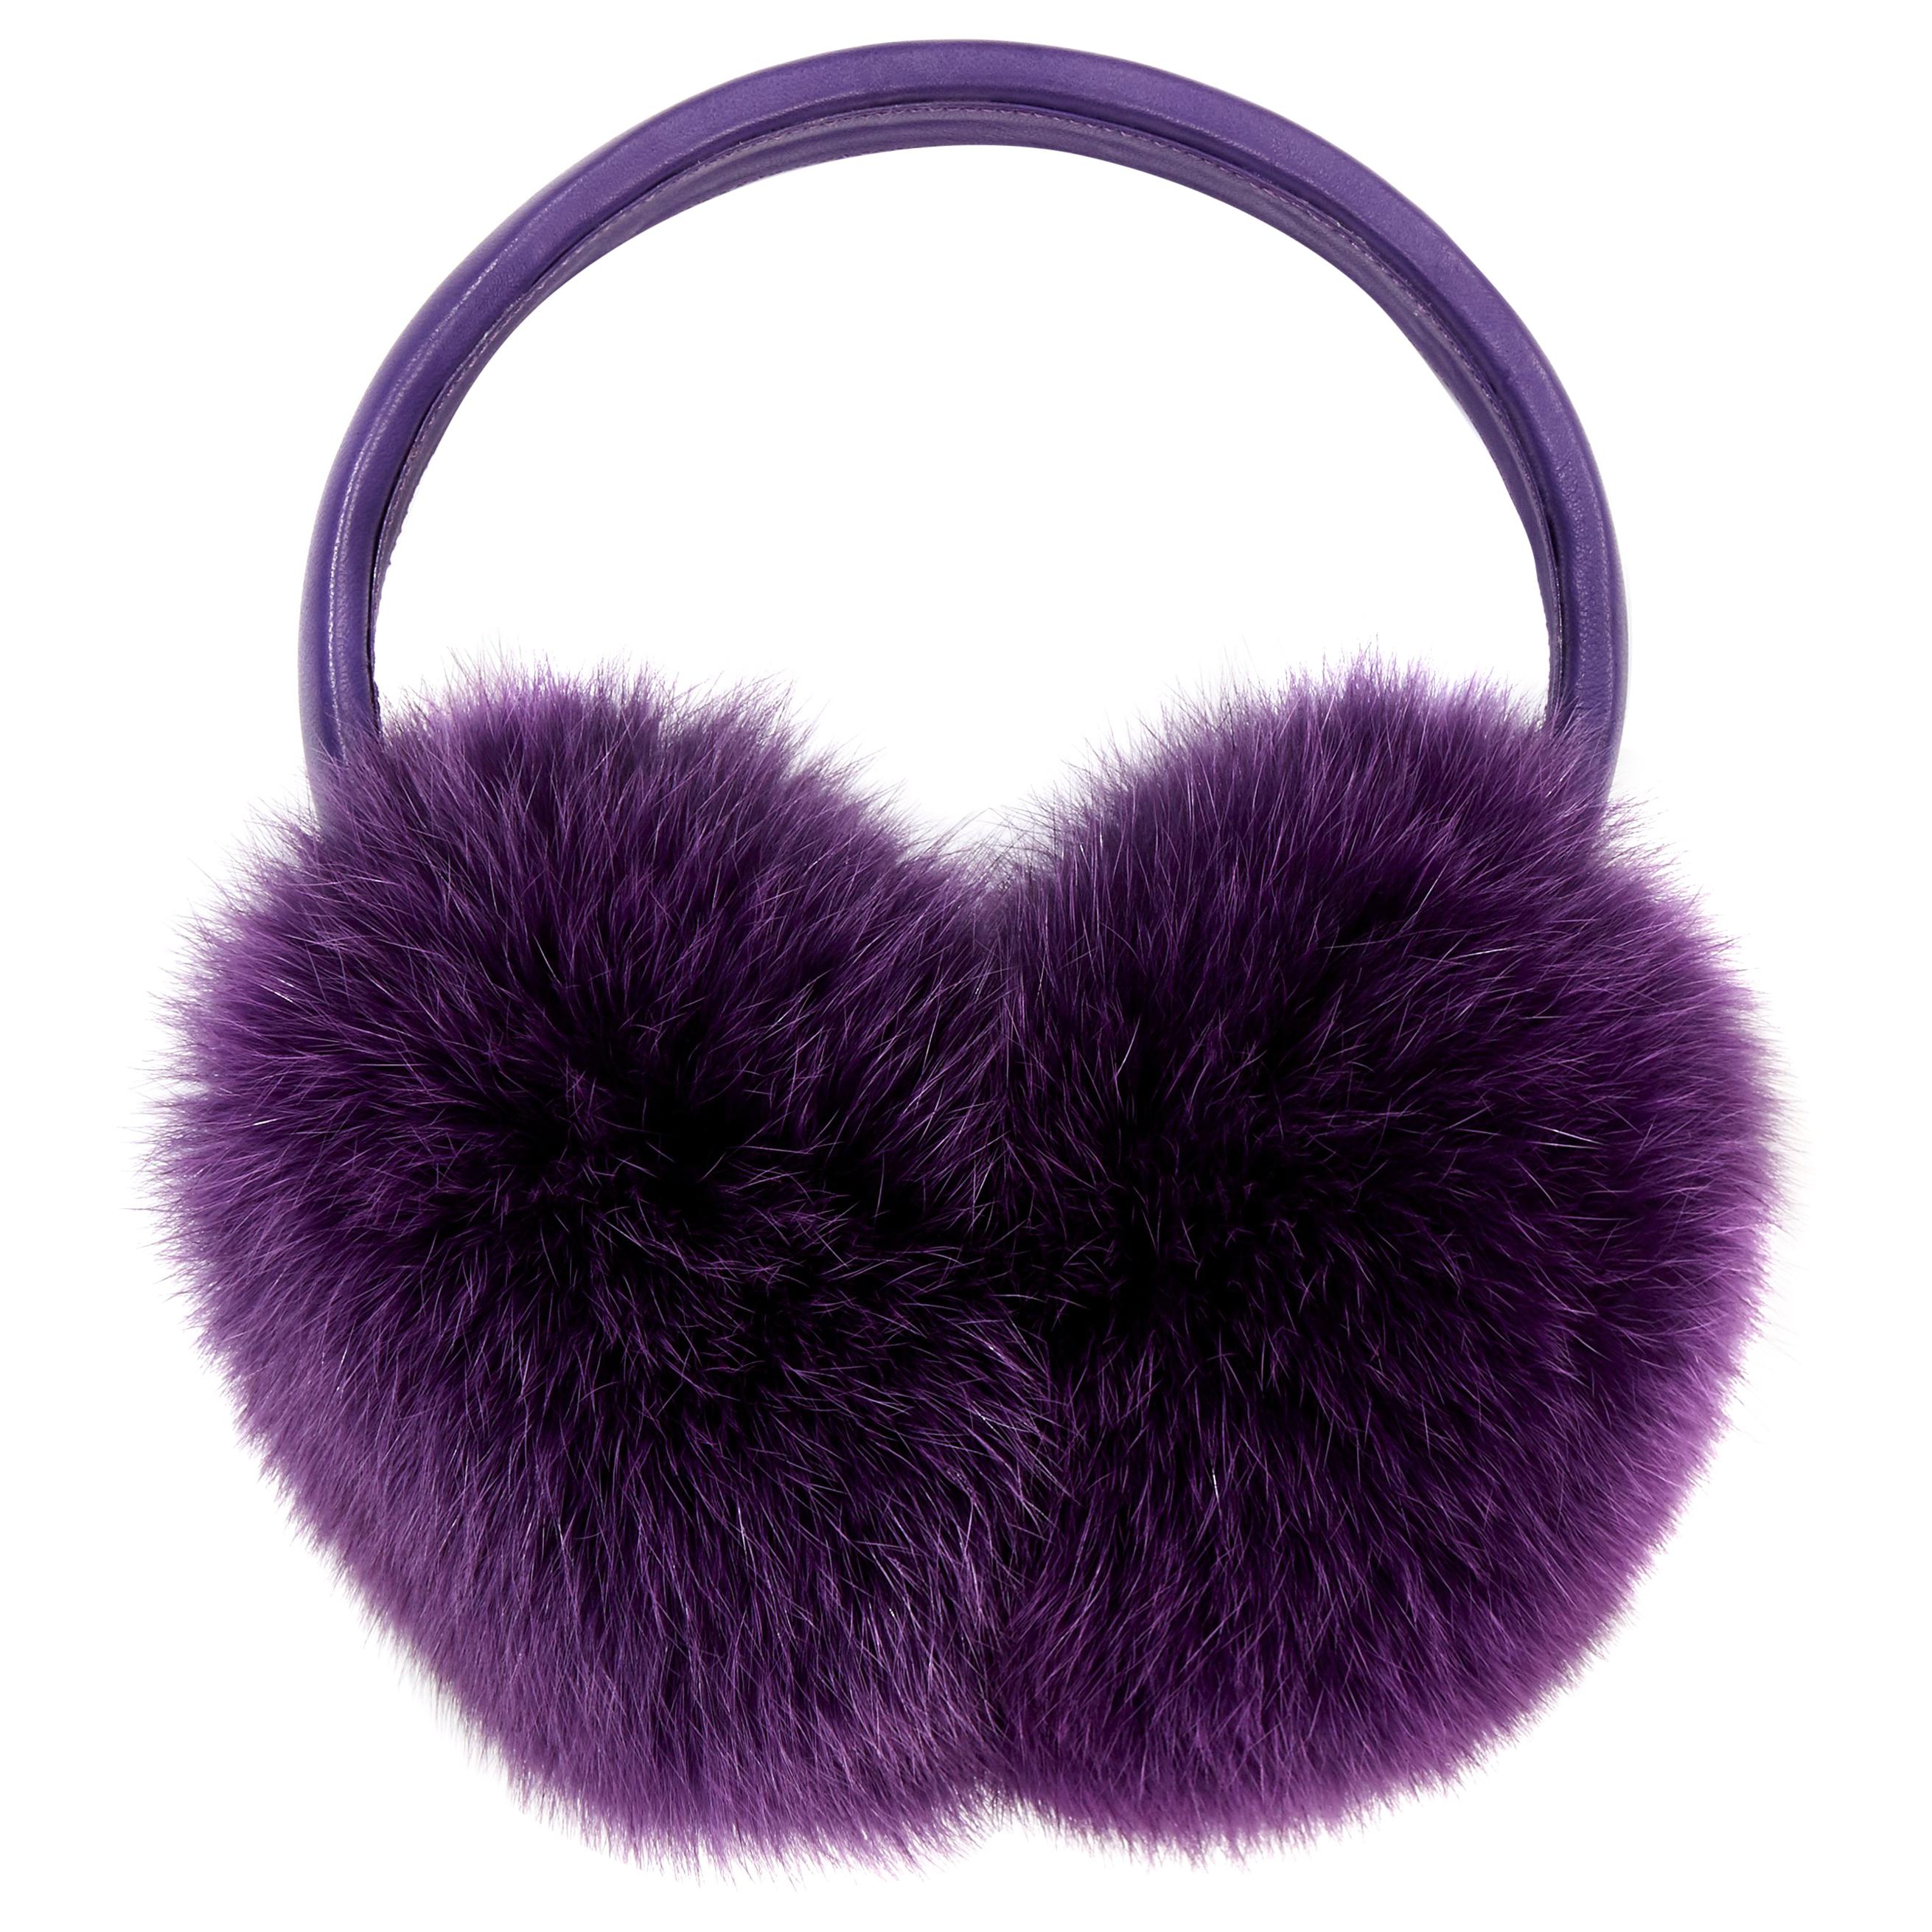 Verheyen London Ear Muffs in Amethyst Purple Fox Fur